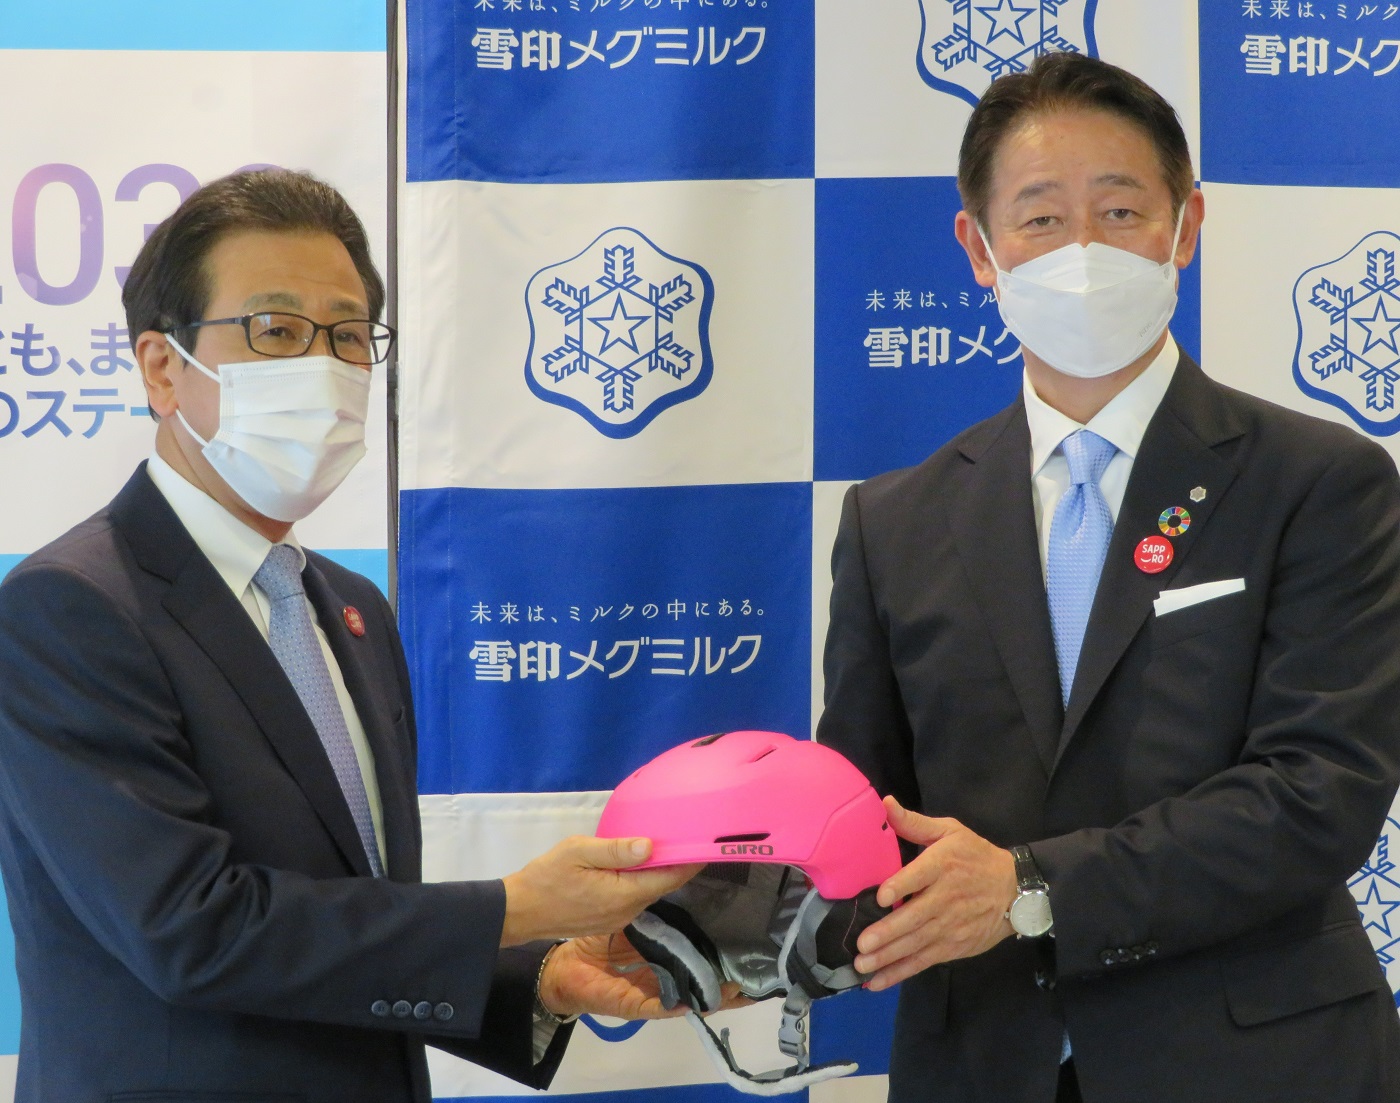 ヘルメットを手渡す佐藤雅俊雪印メグミルク社長（右）と秋元克広札幌市長